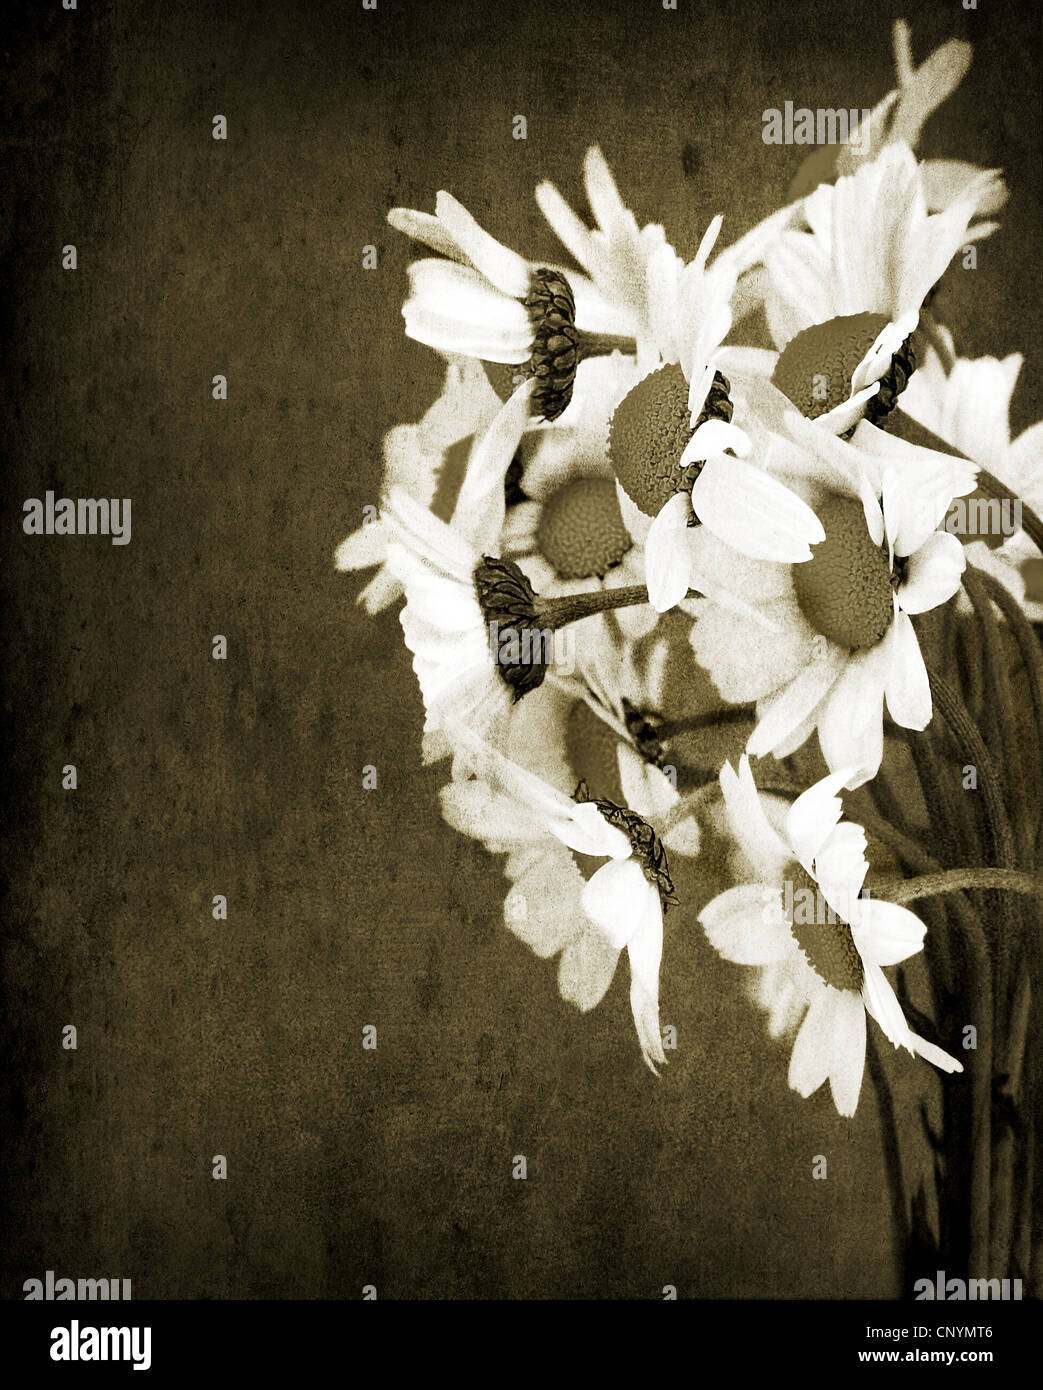 Altes Grunge Bild von Daisy Blumen Blumenstrauß isoliert auf schmutzigen Wand Hintergrund, Sepia getönt Stockfoto